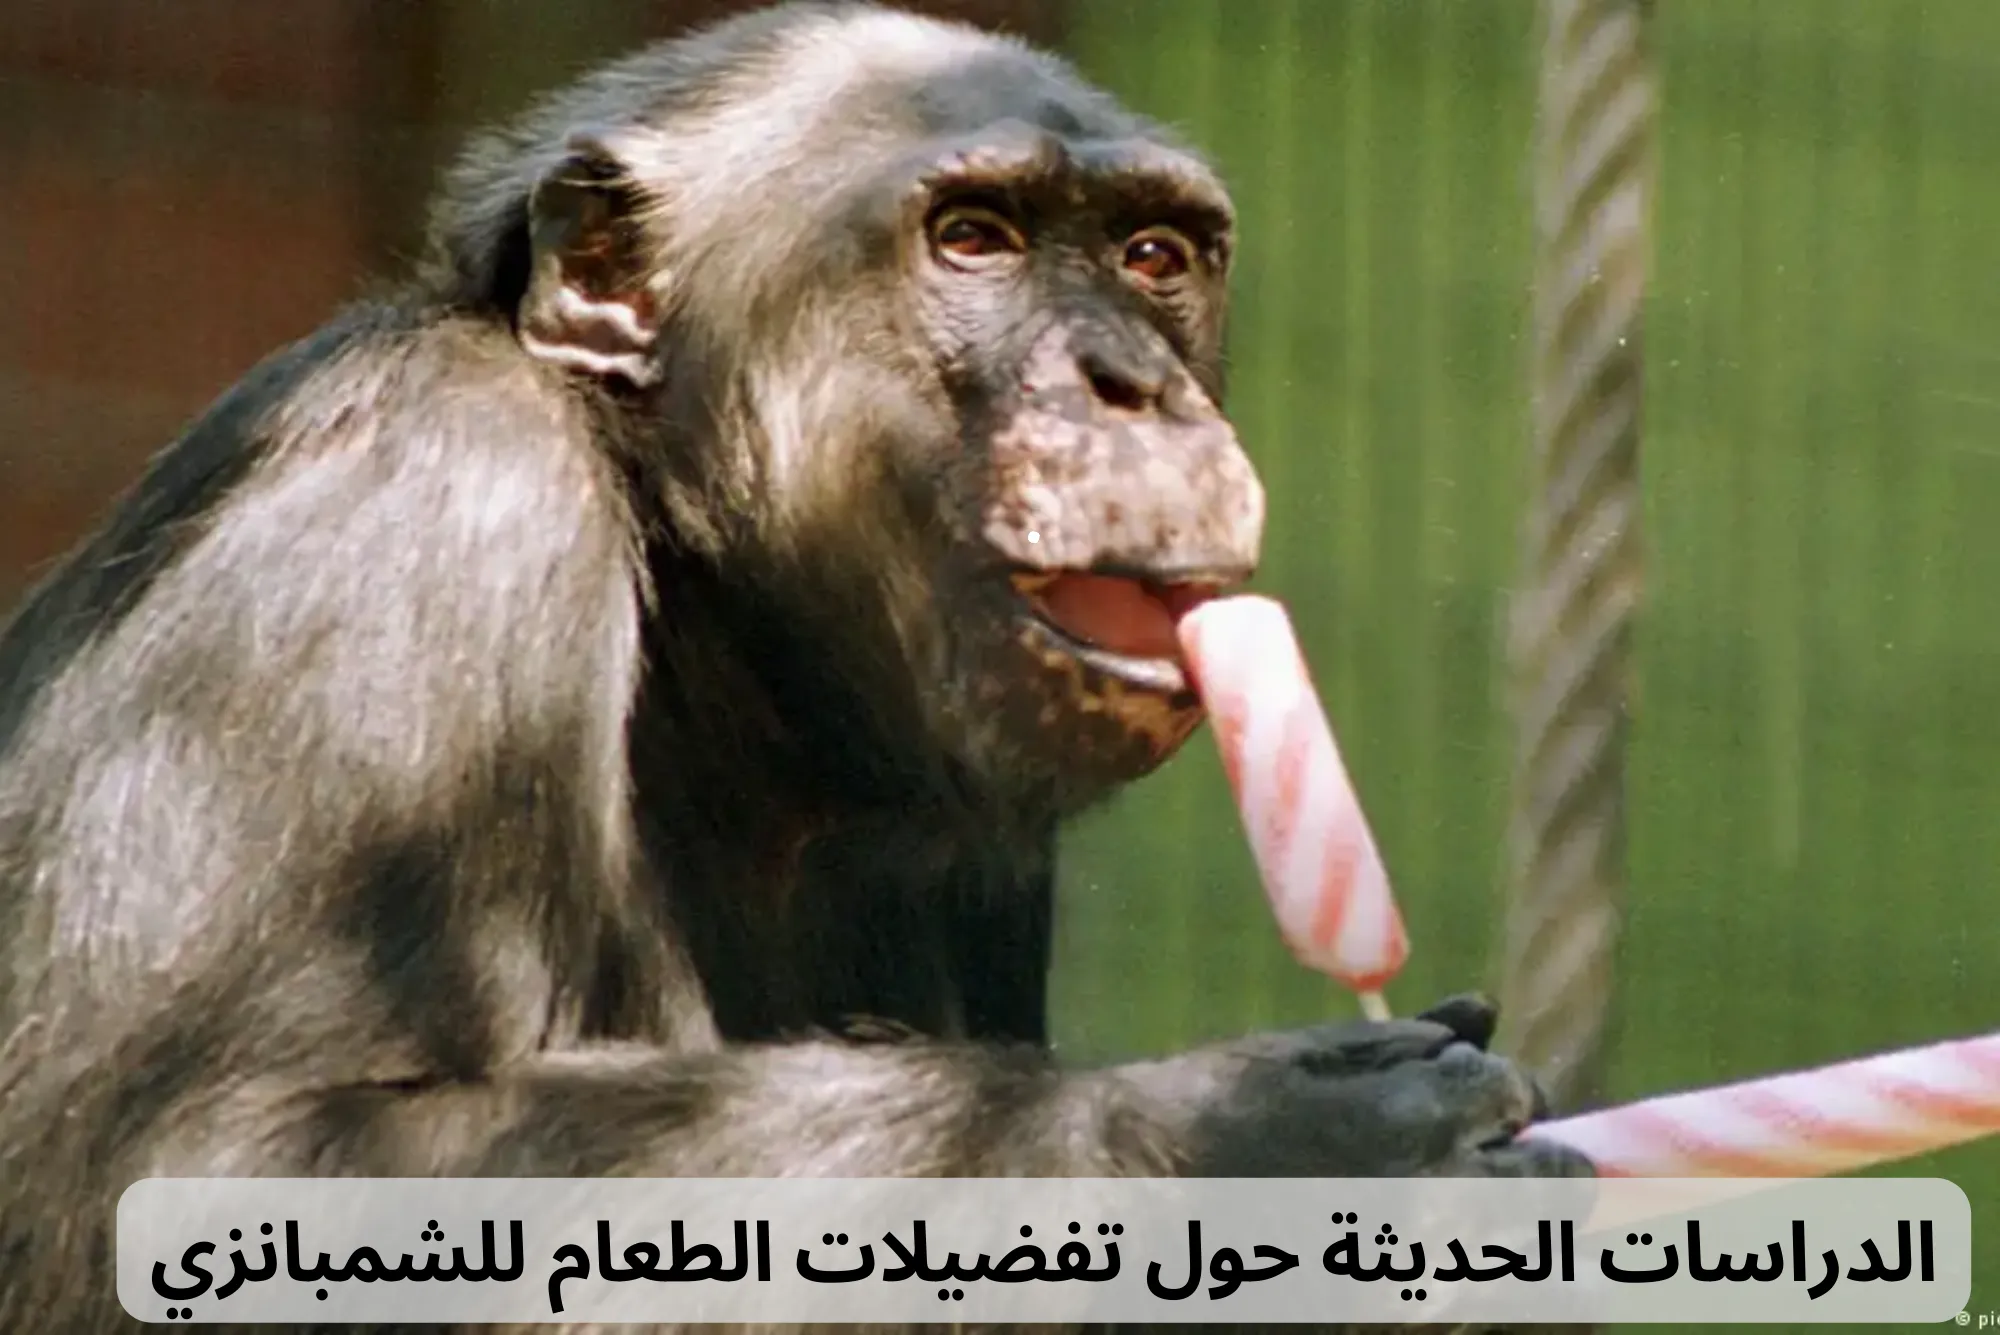 الطعام للشمبانزي